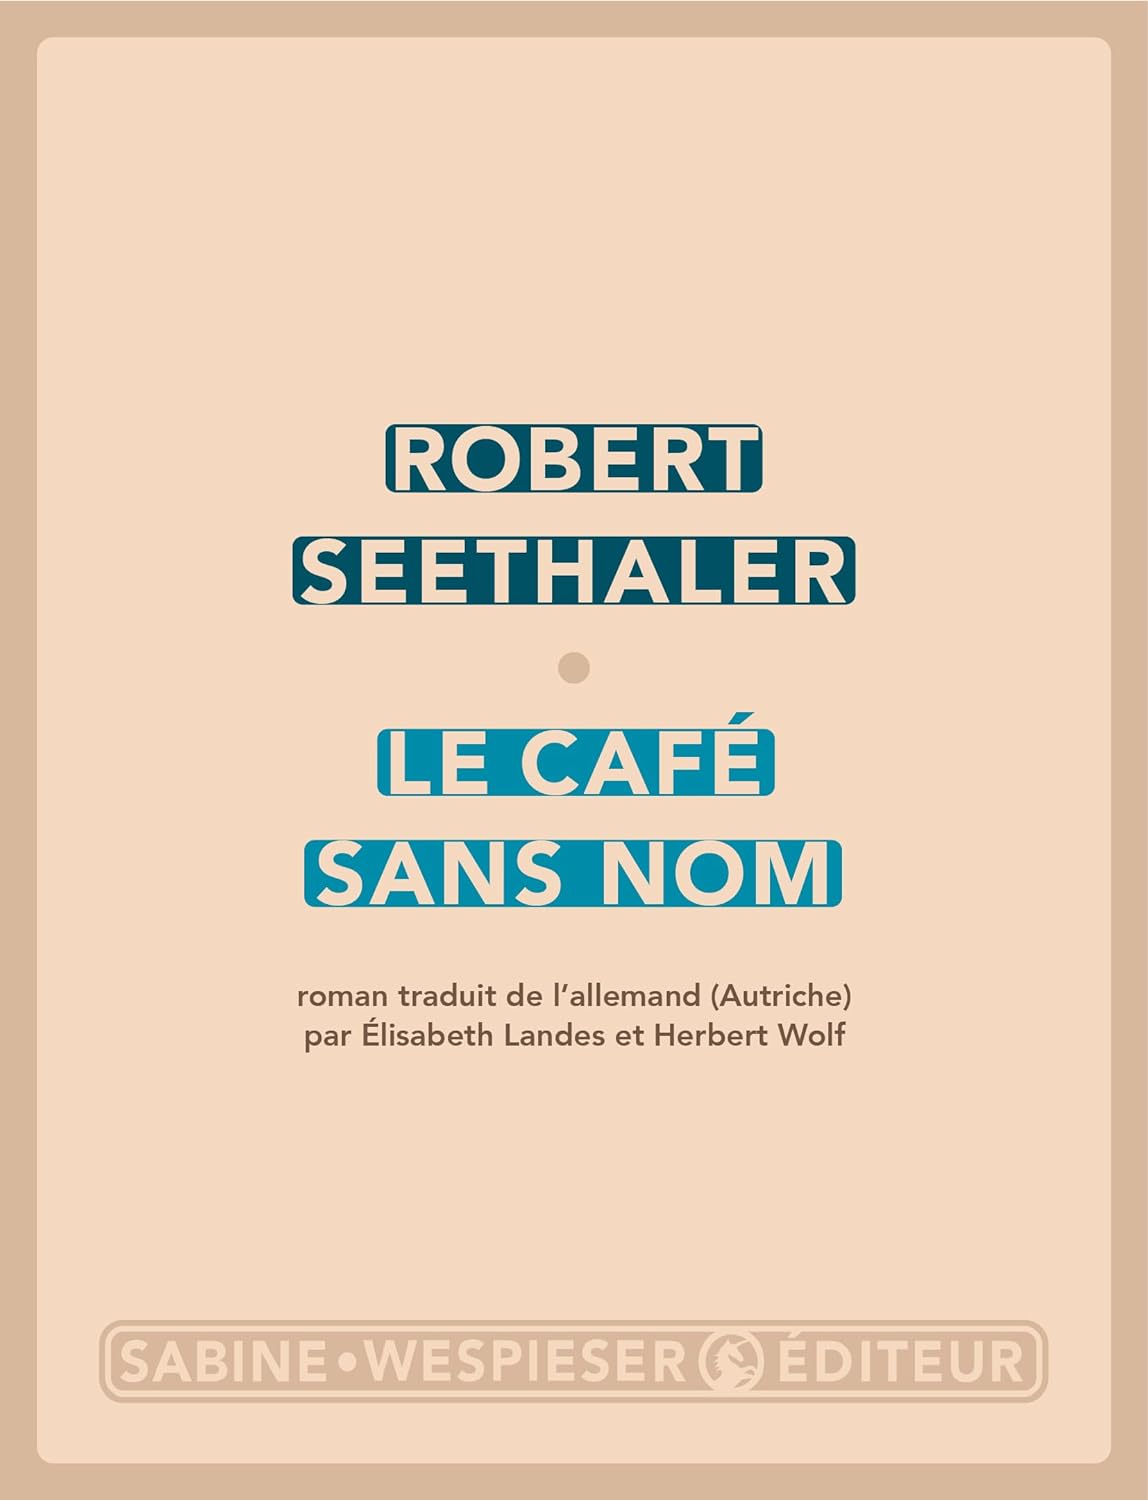 Robert Seethaler, Élisabeth Landes, Herbert Wolf: Le café sans nom (Paperback, français language, Sabine Wespieser Éditeur)